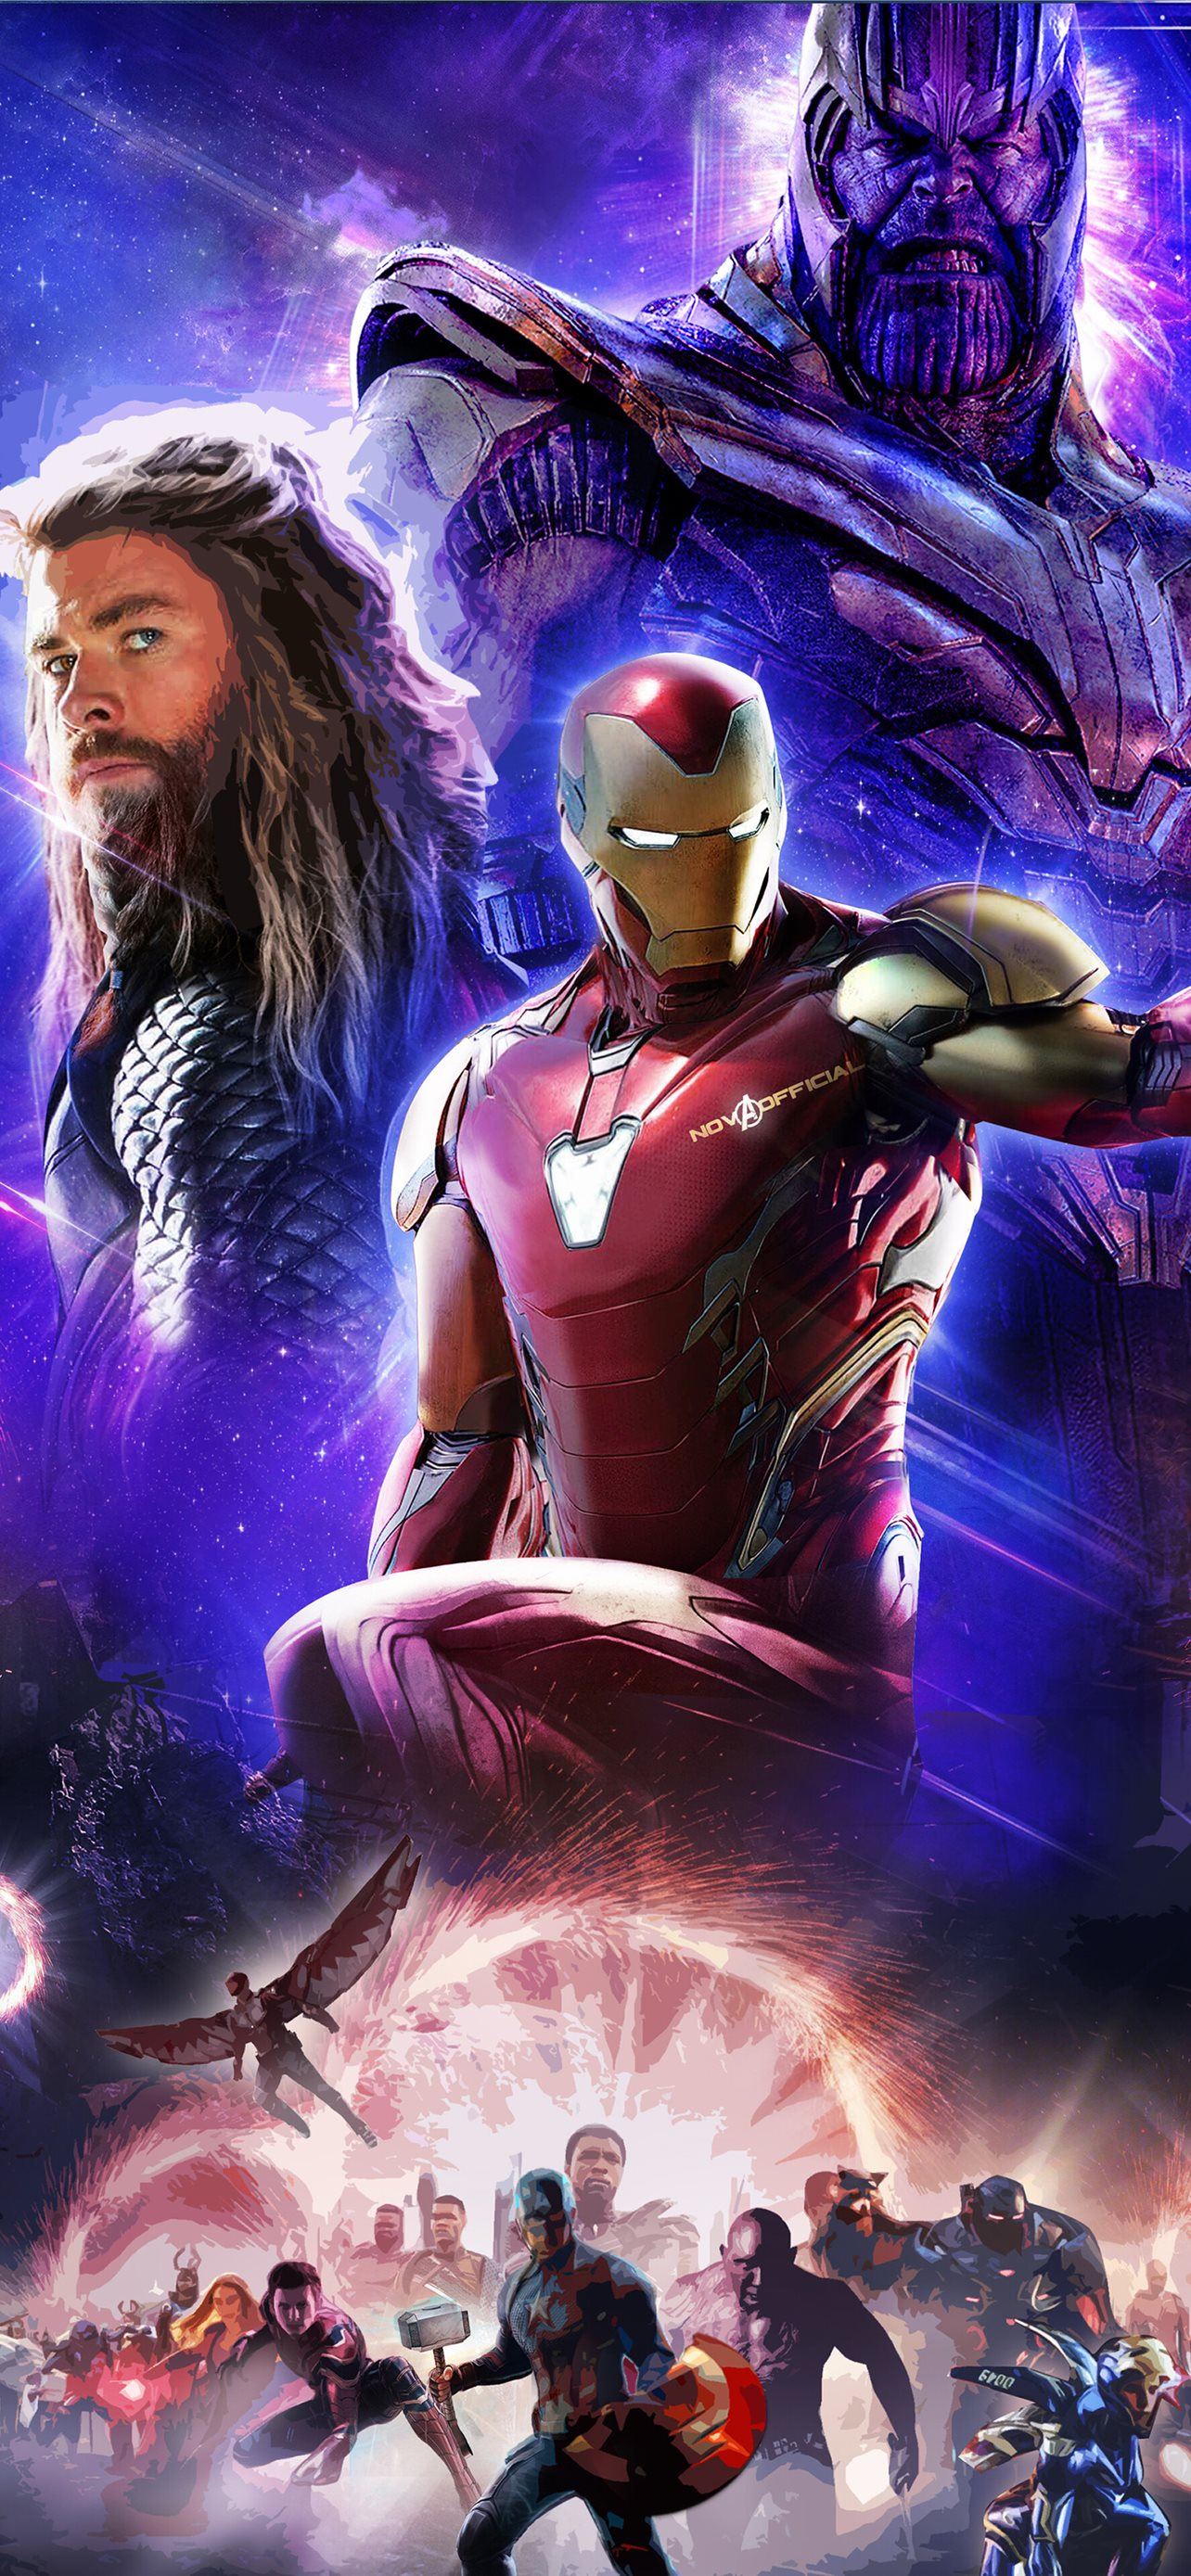 Avengers Marvel - revised - Live Wallpaper Dreamscene - UHD 2160 - 4k